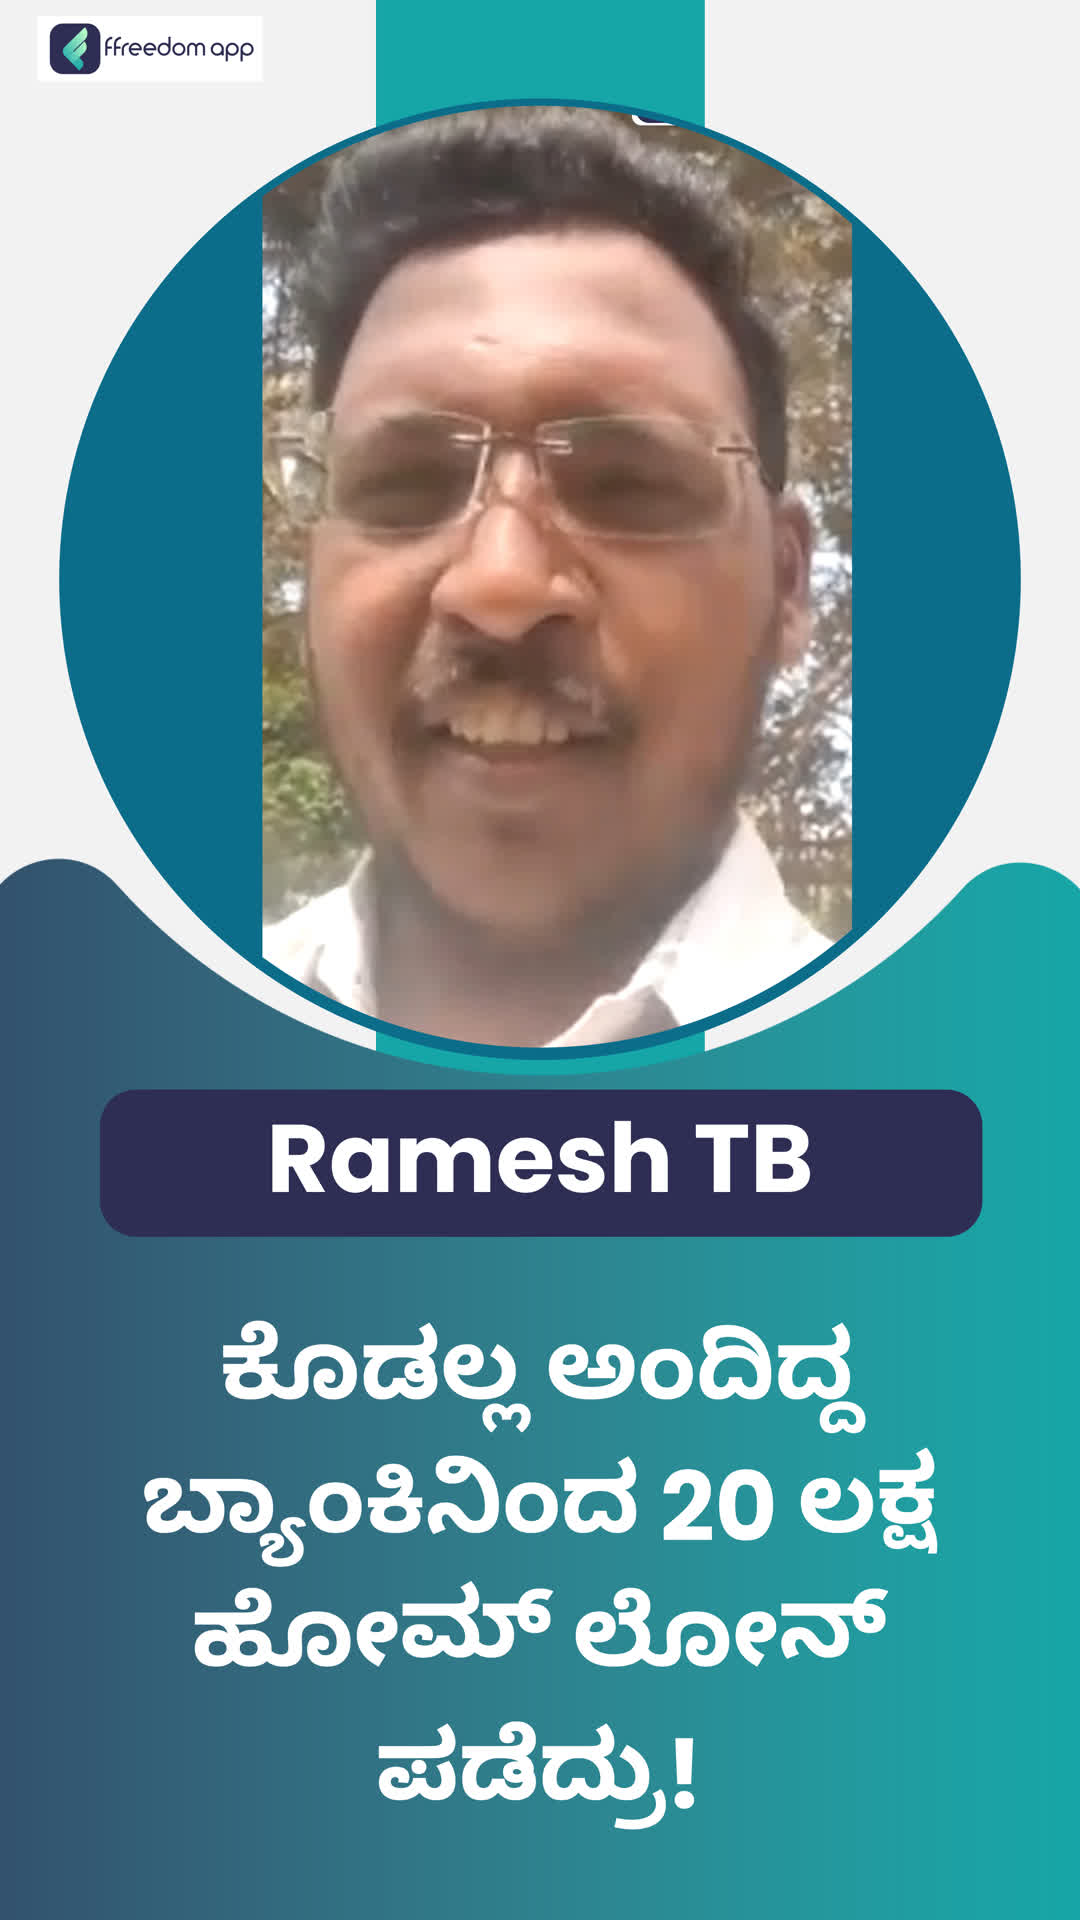 Ramesh TB's Honest Review of ffreedom app - Tumakuru ,Karnataka